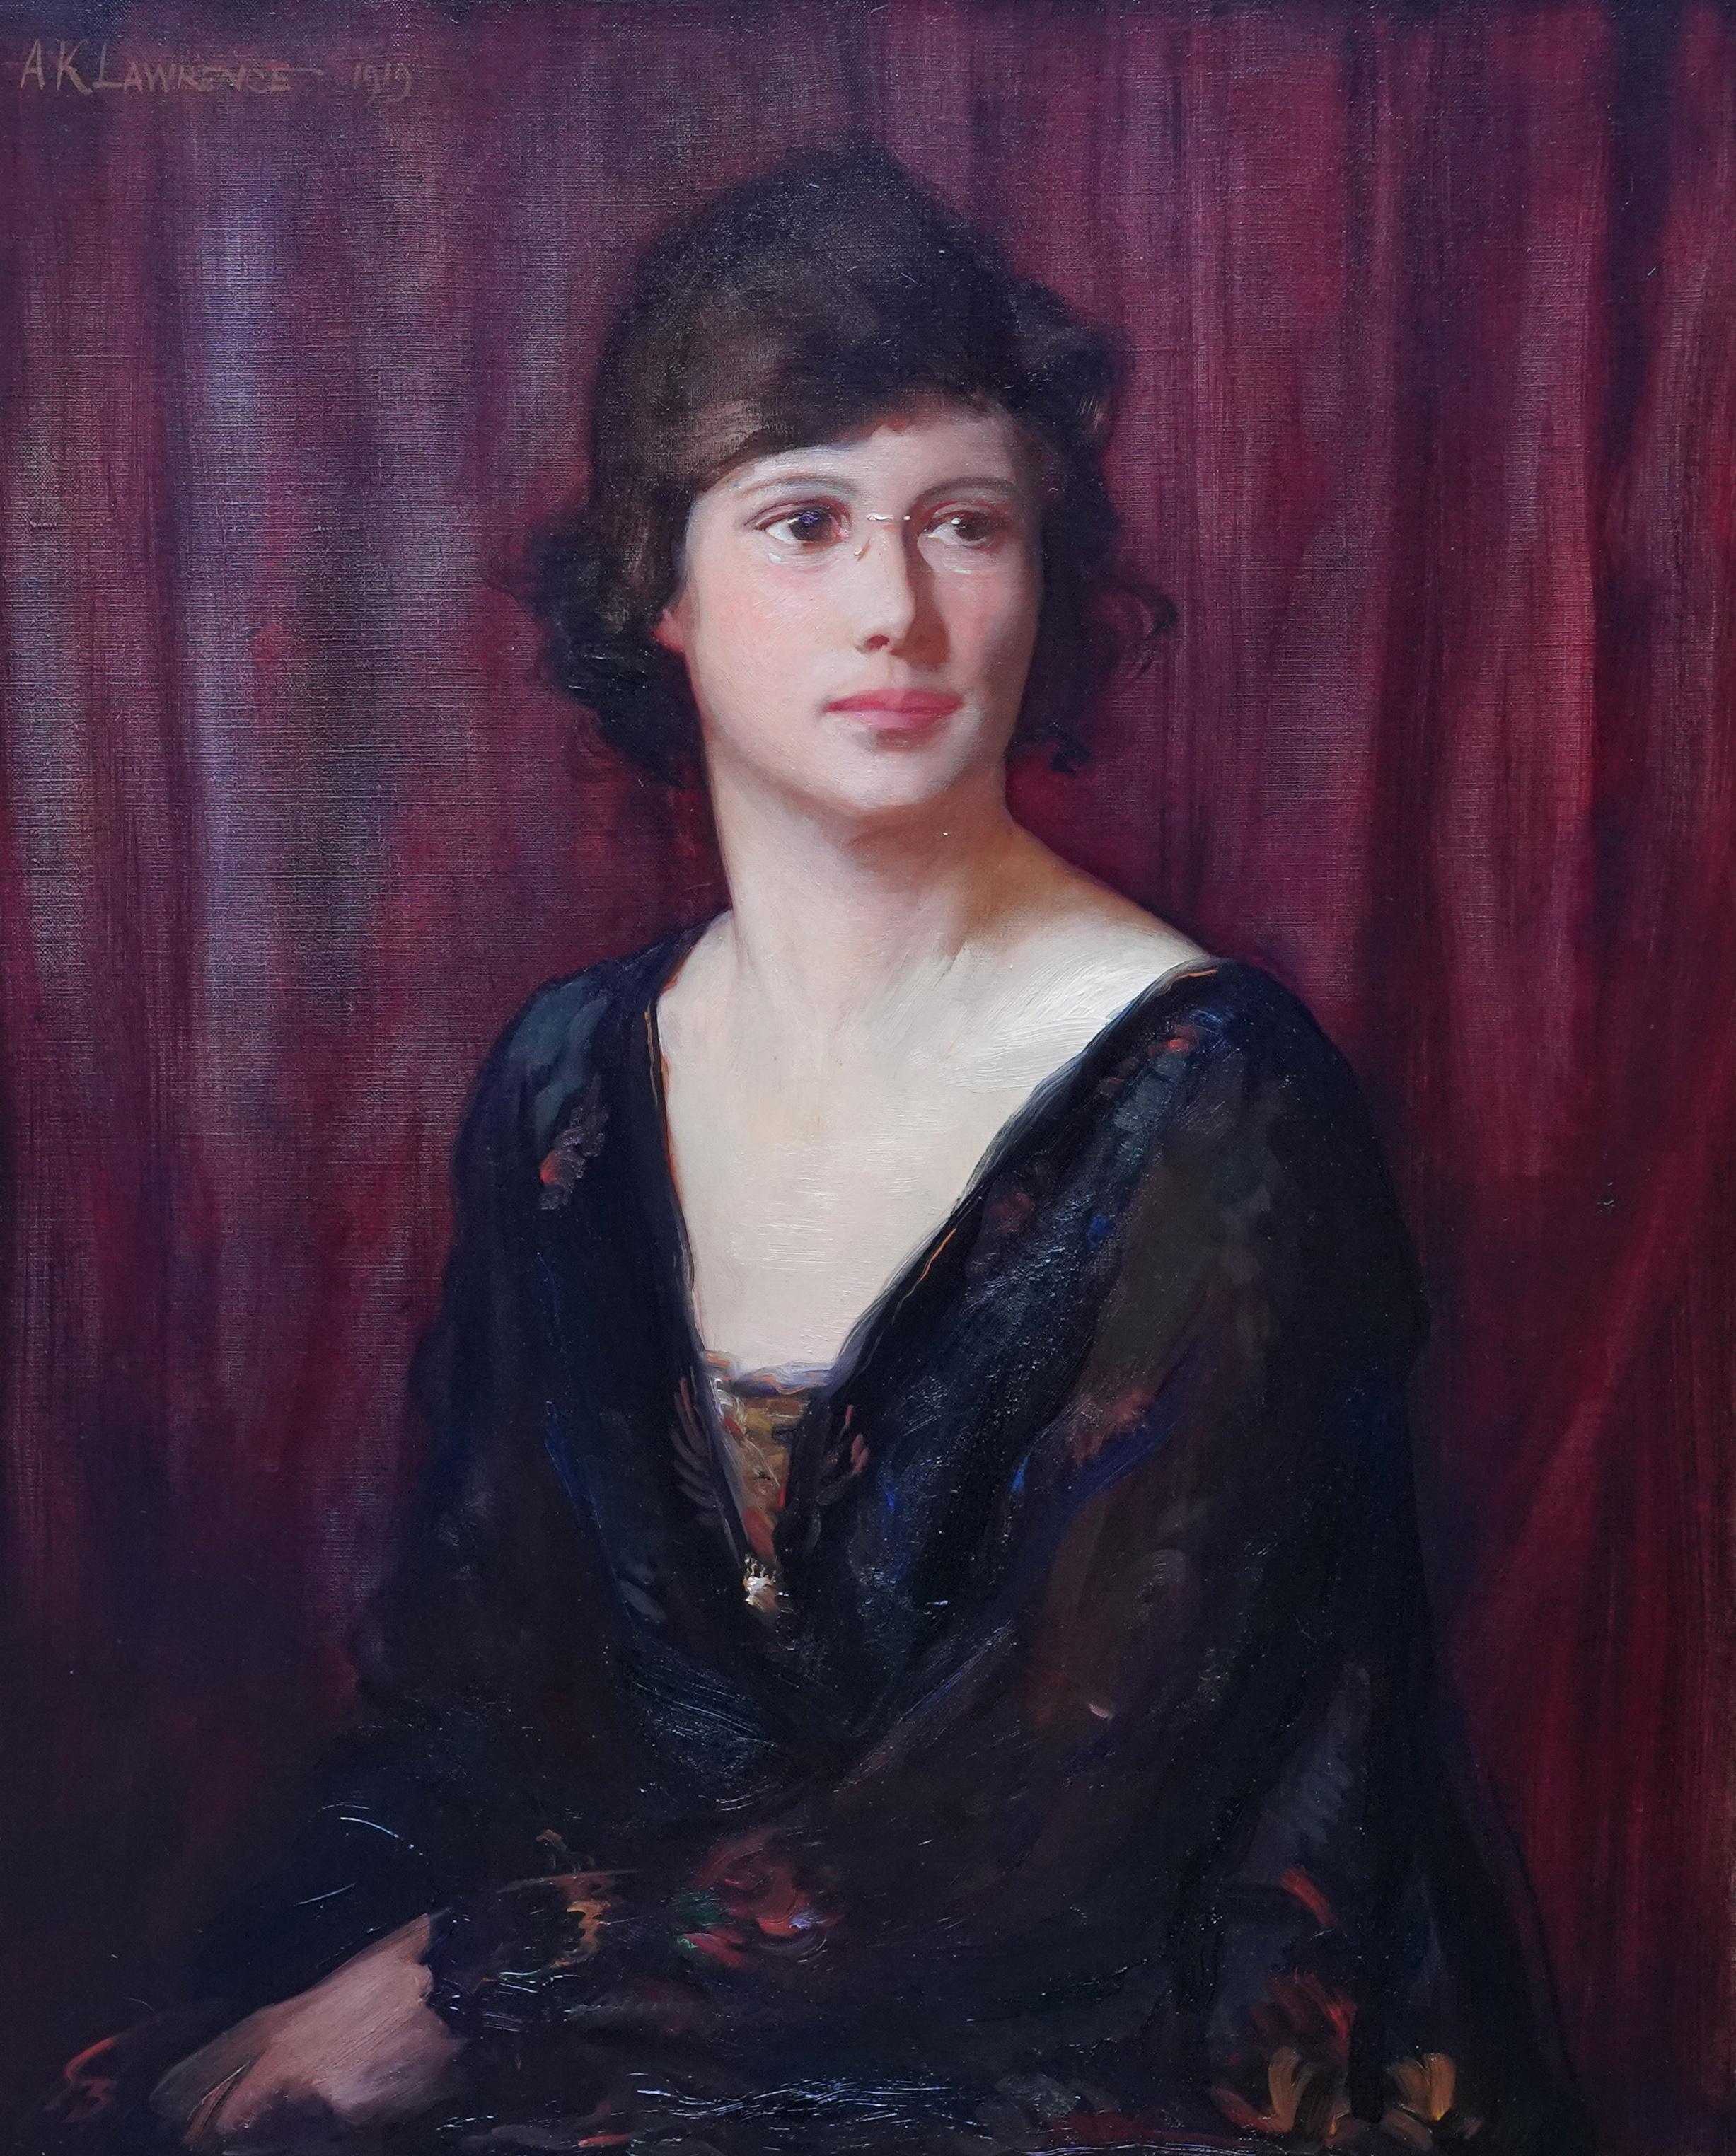 Portrait d'une femme à Pince Nez - Portrait à l'huile britannique de 1919 - Painting de Alfred Kingsley Lawrence